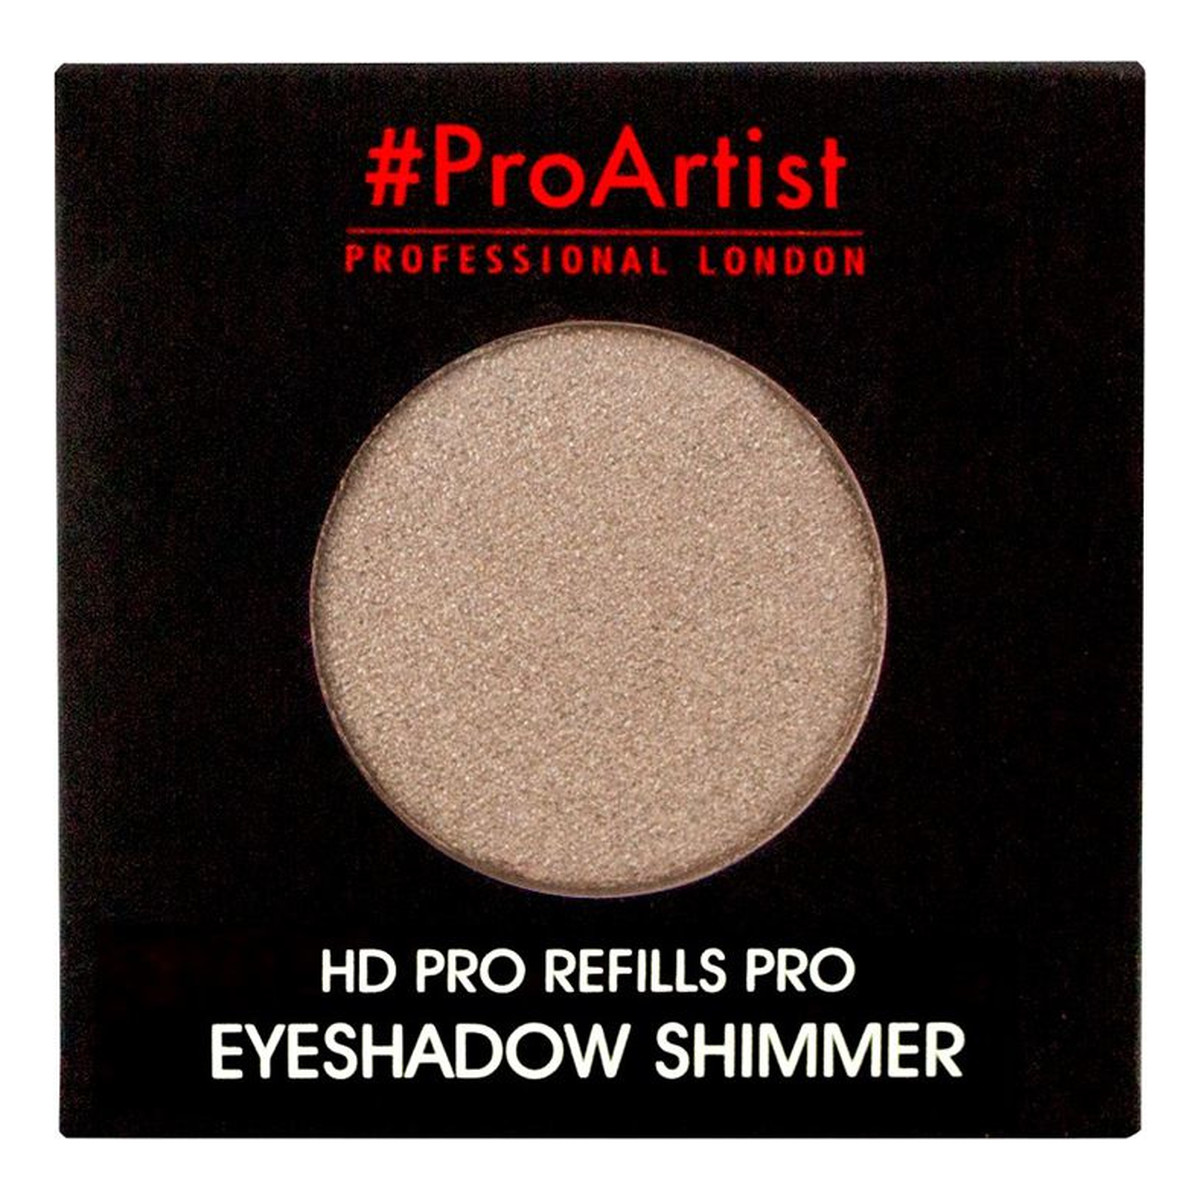 Freedom Makeup Pro Artist HD Refills Shimmer Cień do powiek